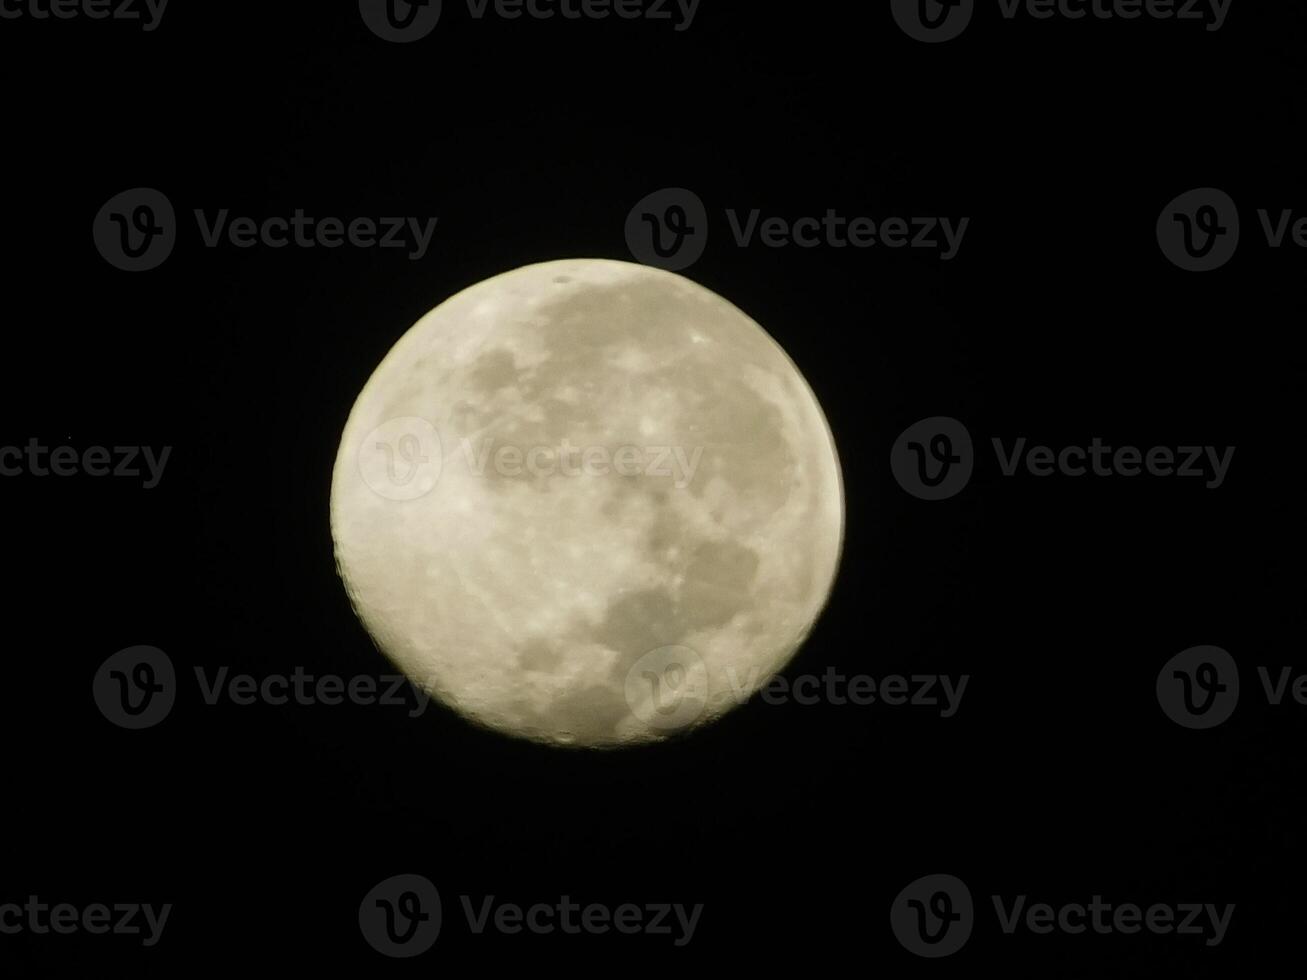 full måne poträtt på natt foto